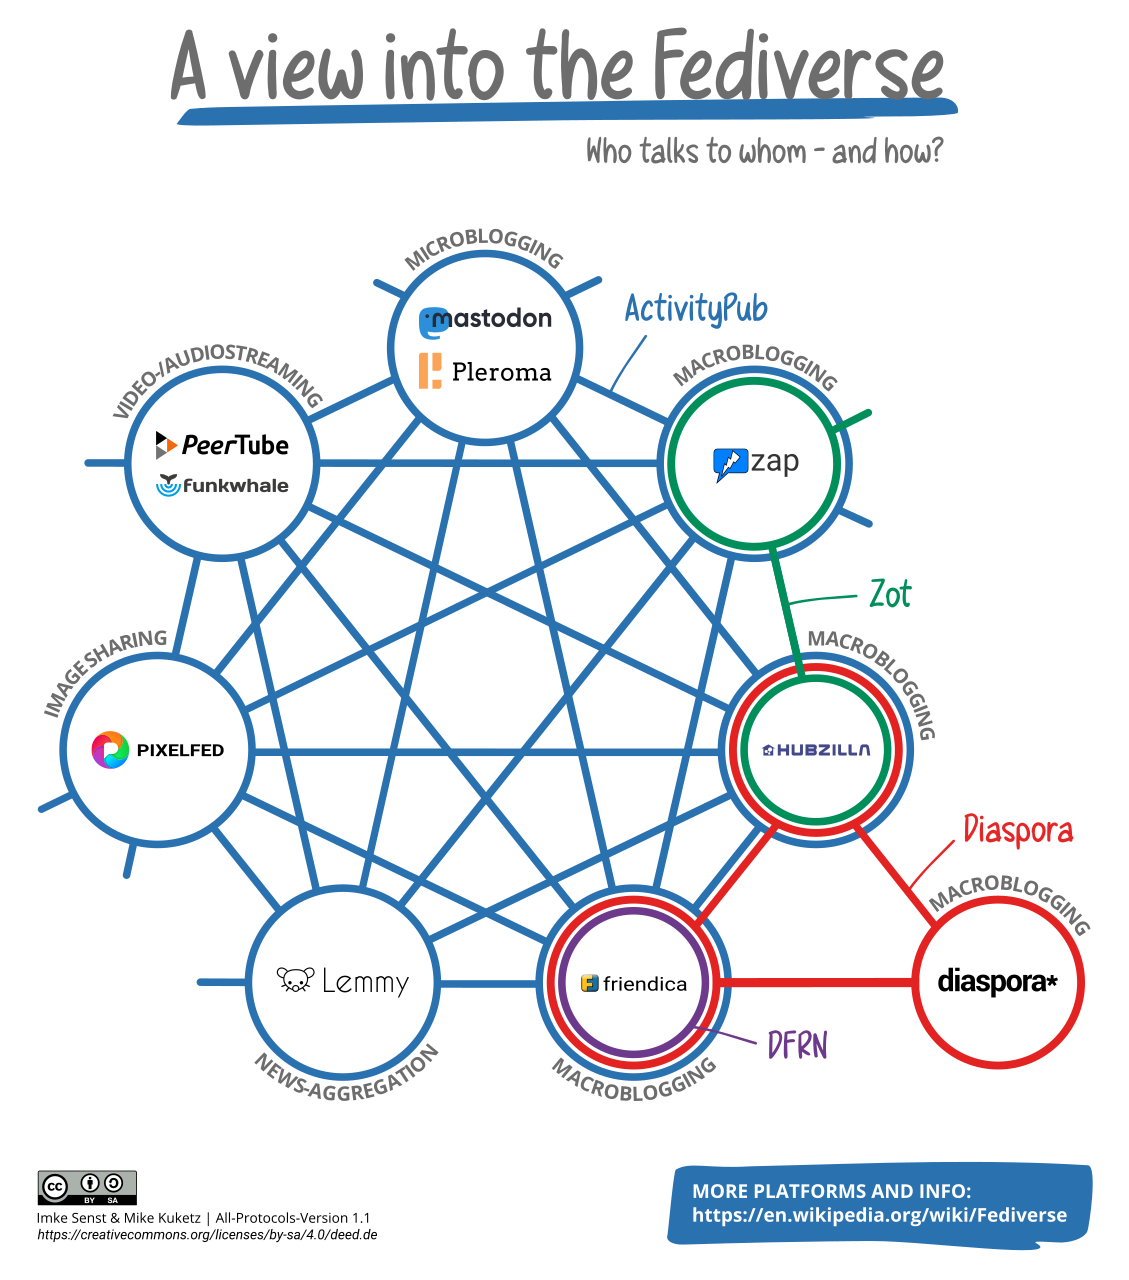 Un diagramme montrant les interconnections entre différents réseaux sociaux via ActivityPub.